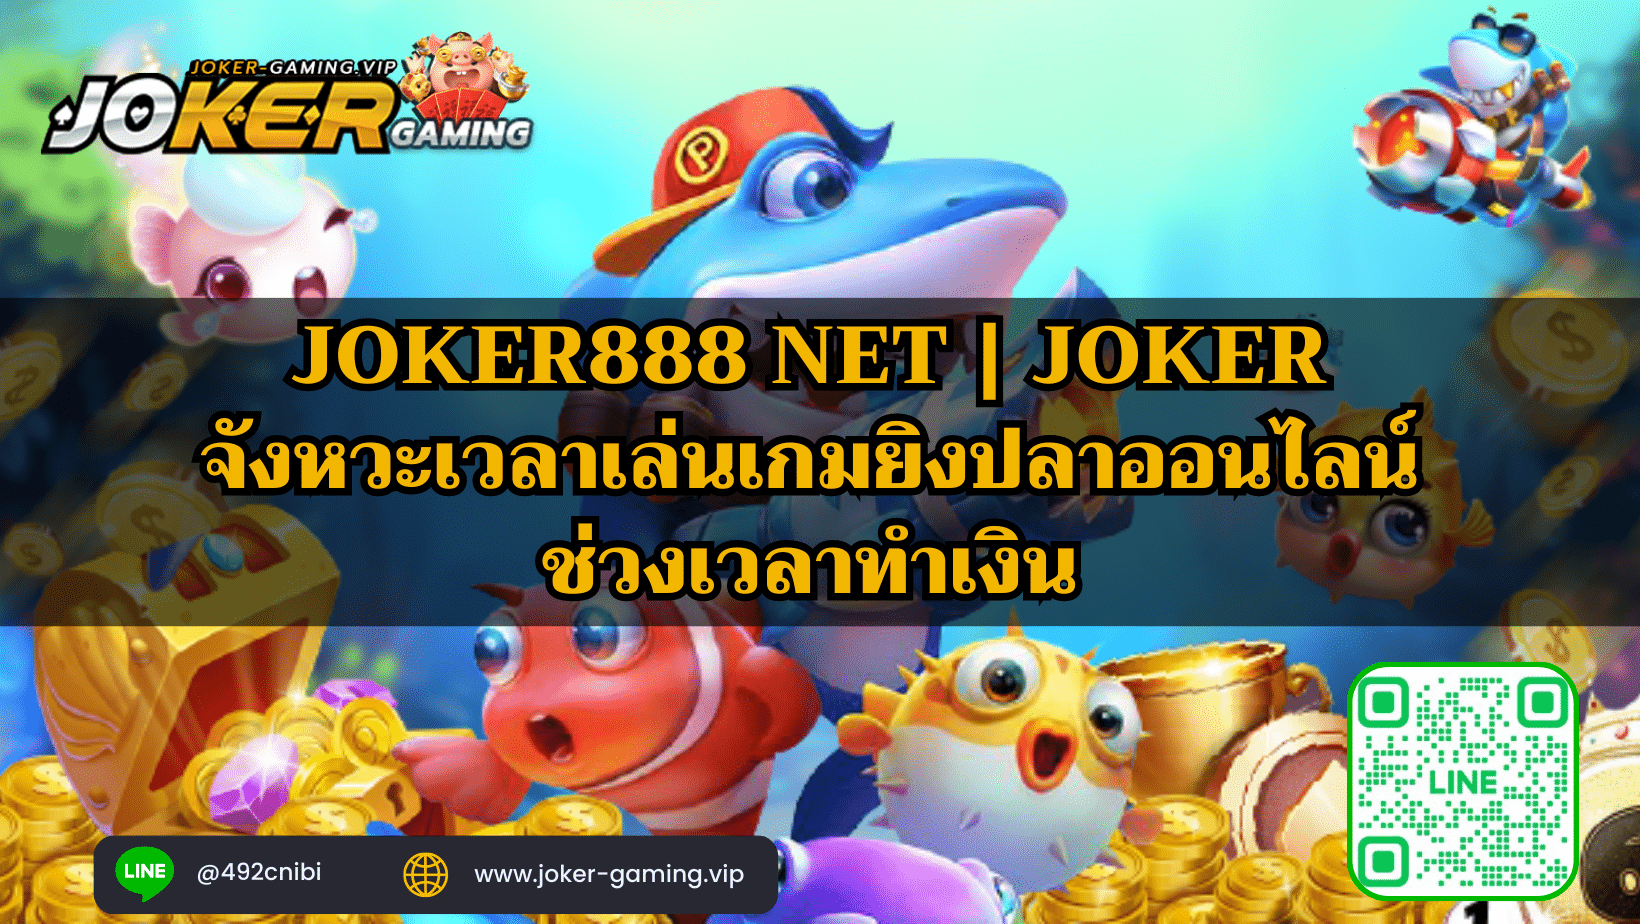 Joker888 net